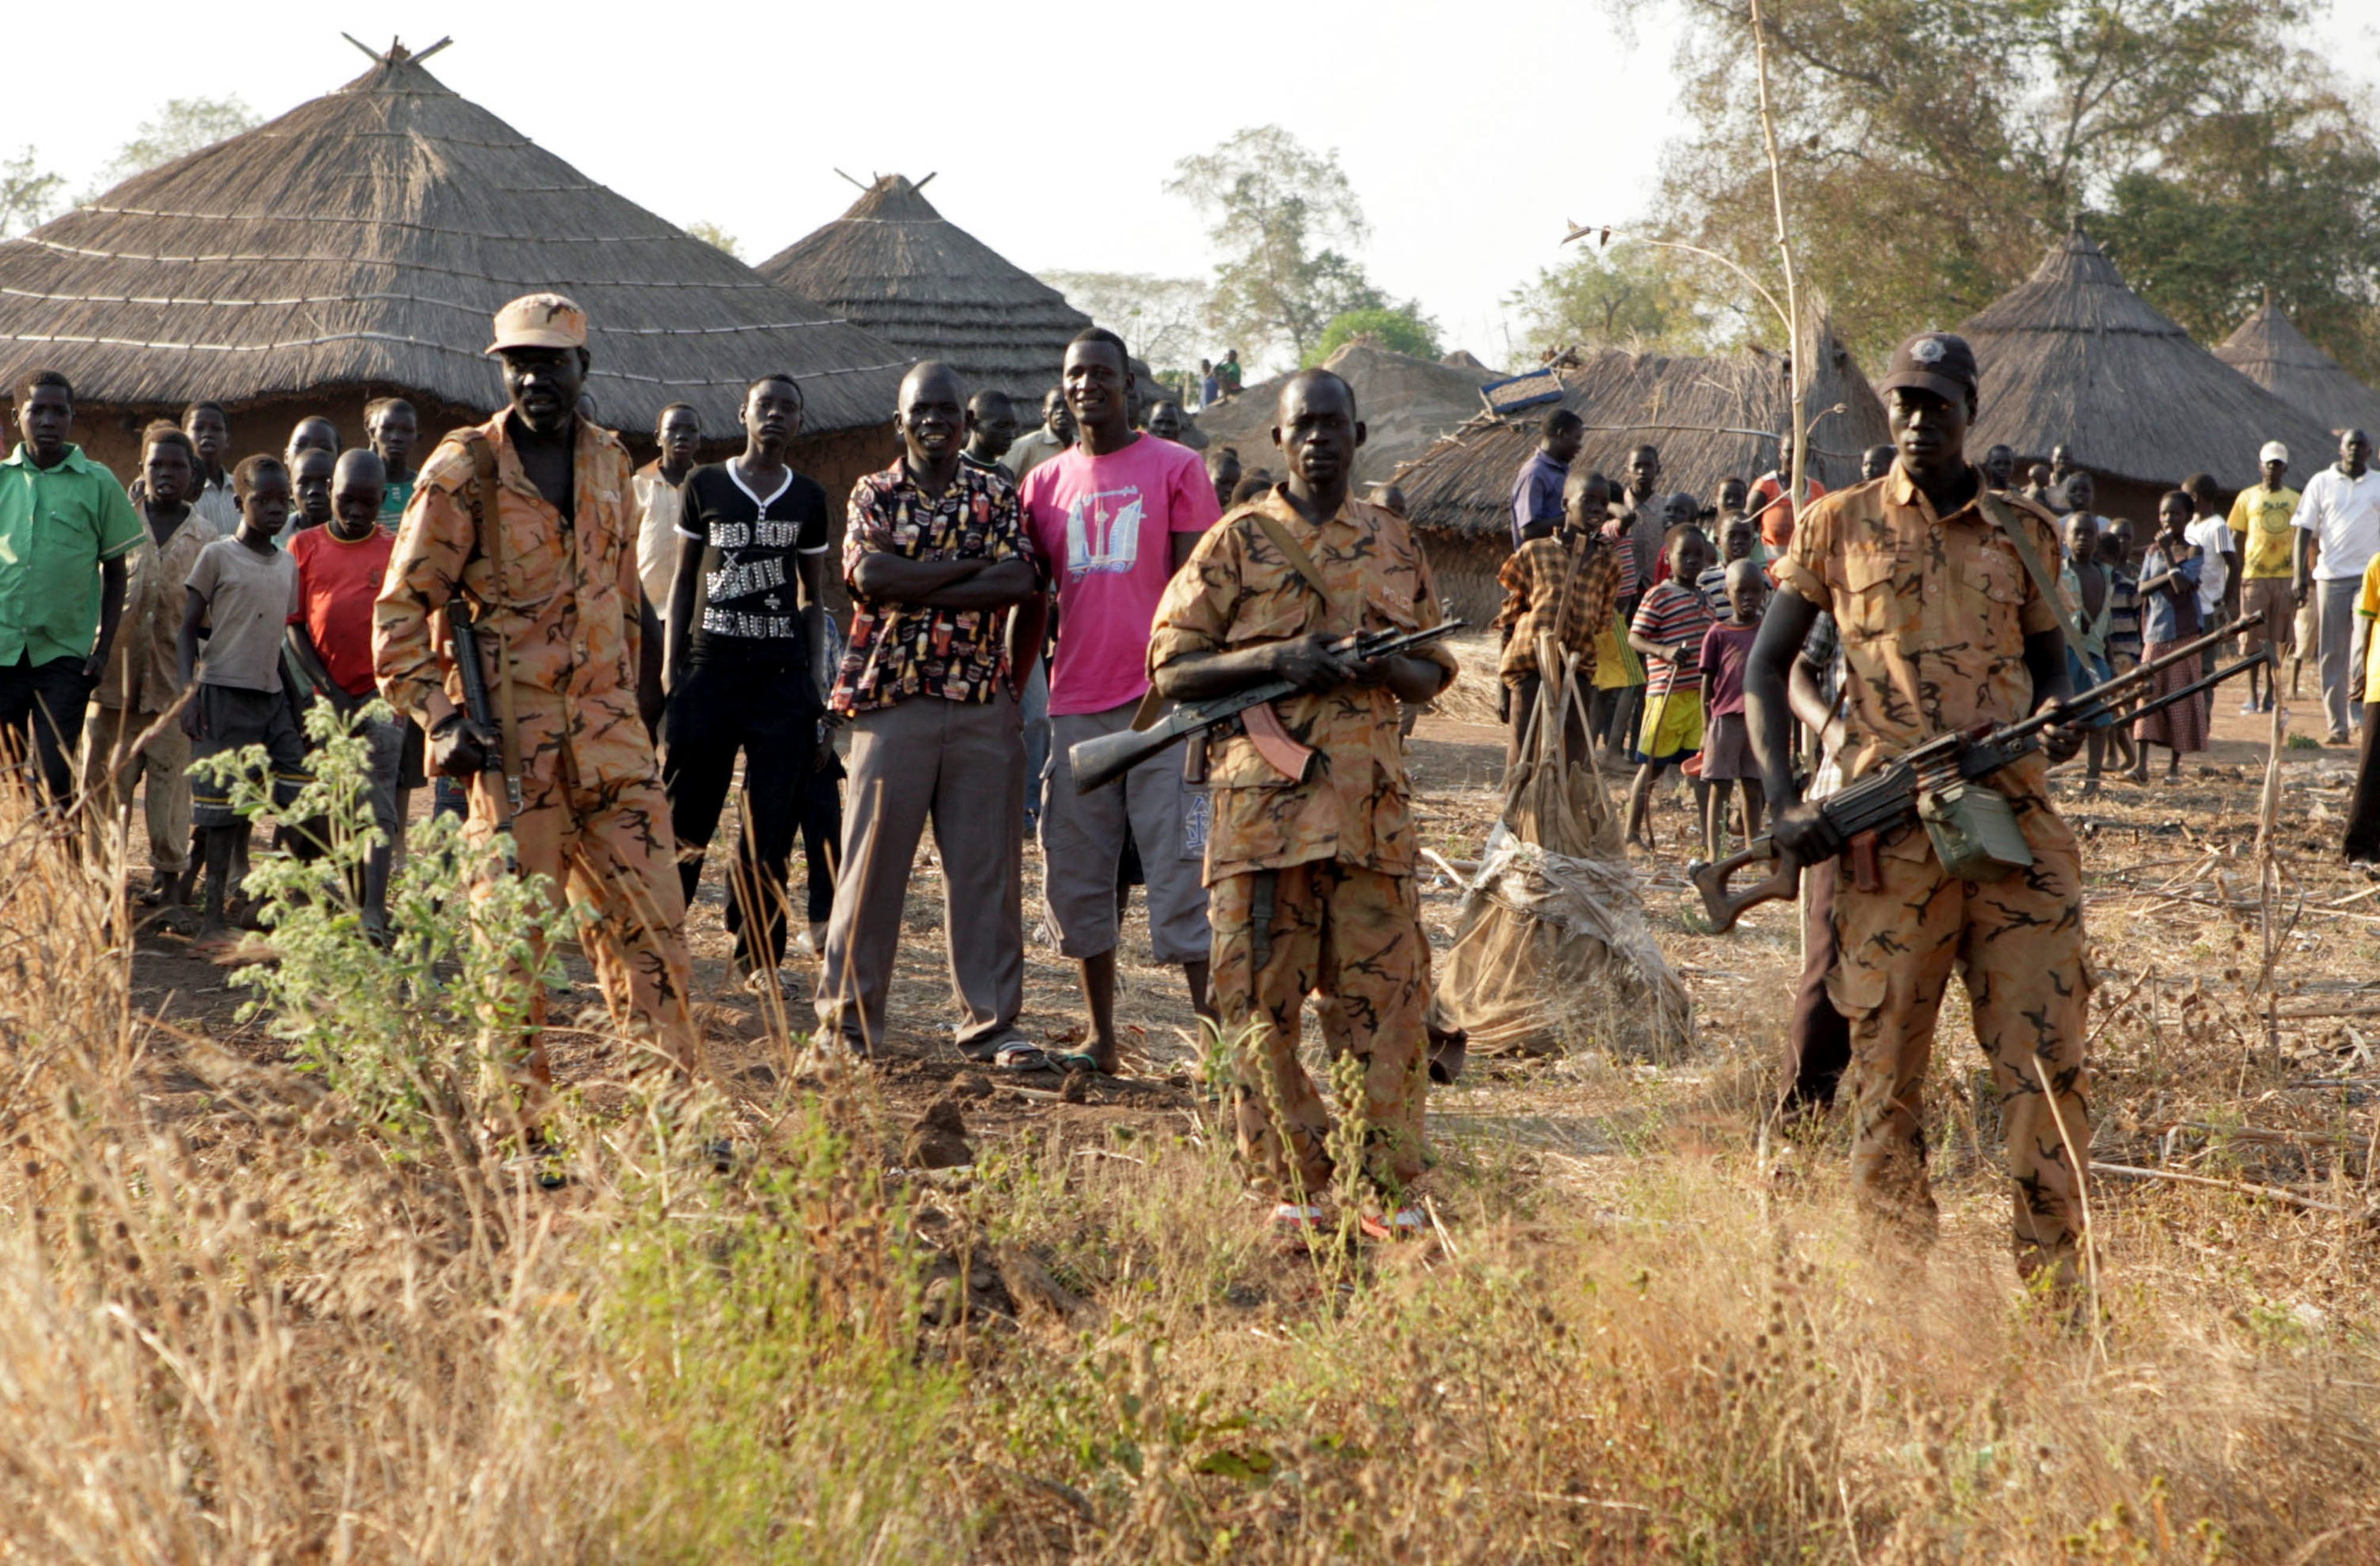 Habrían al menos 382.000 víctimas por guerra civil en Sudán del Sur, según estudio